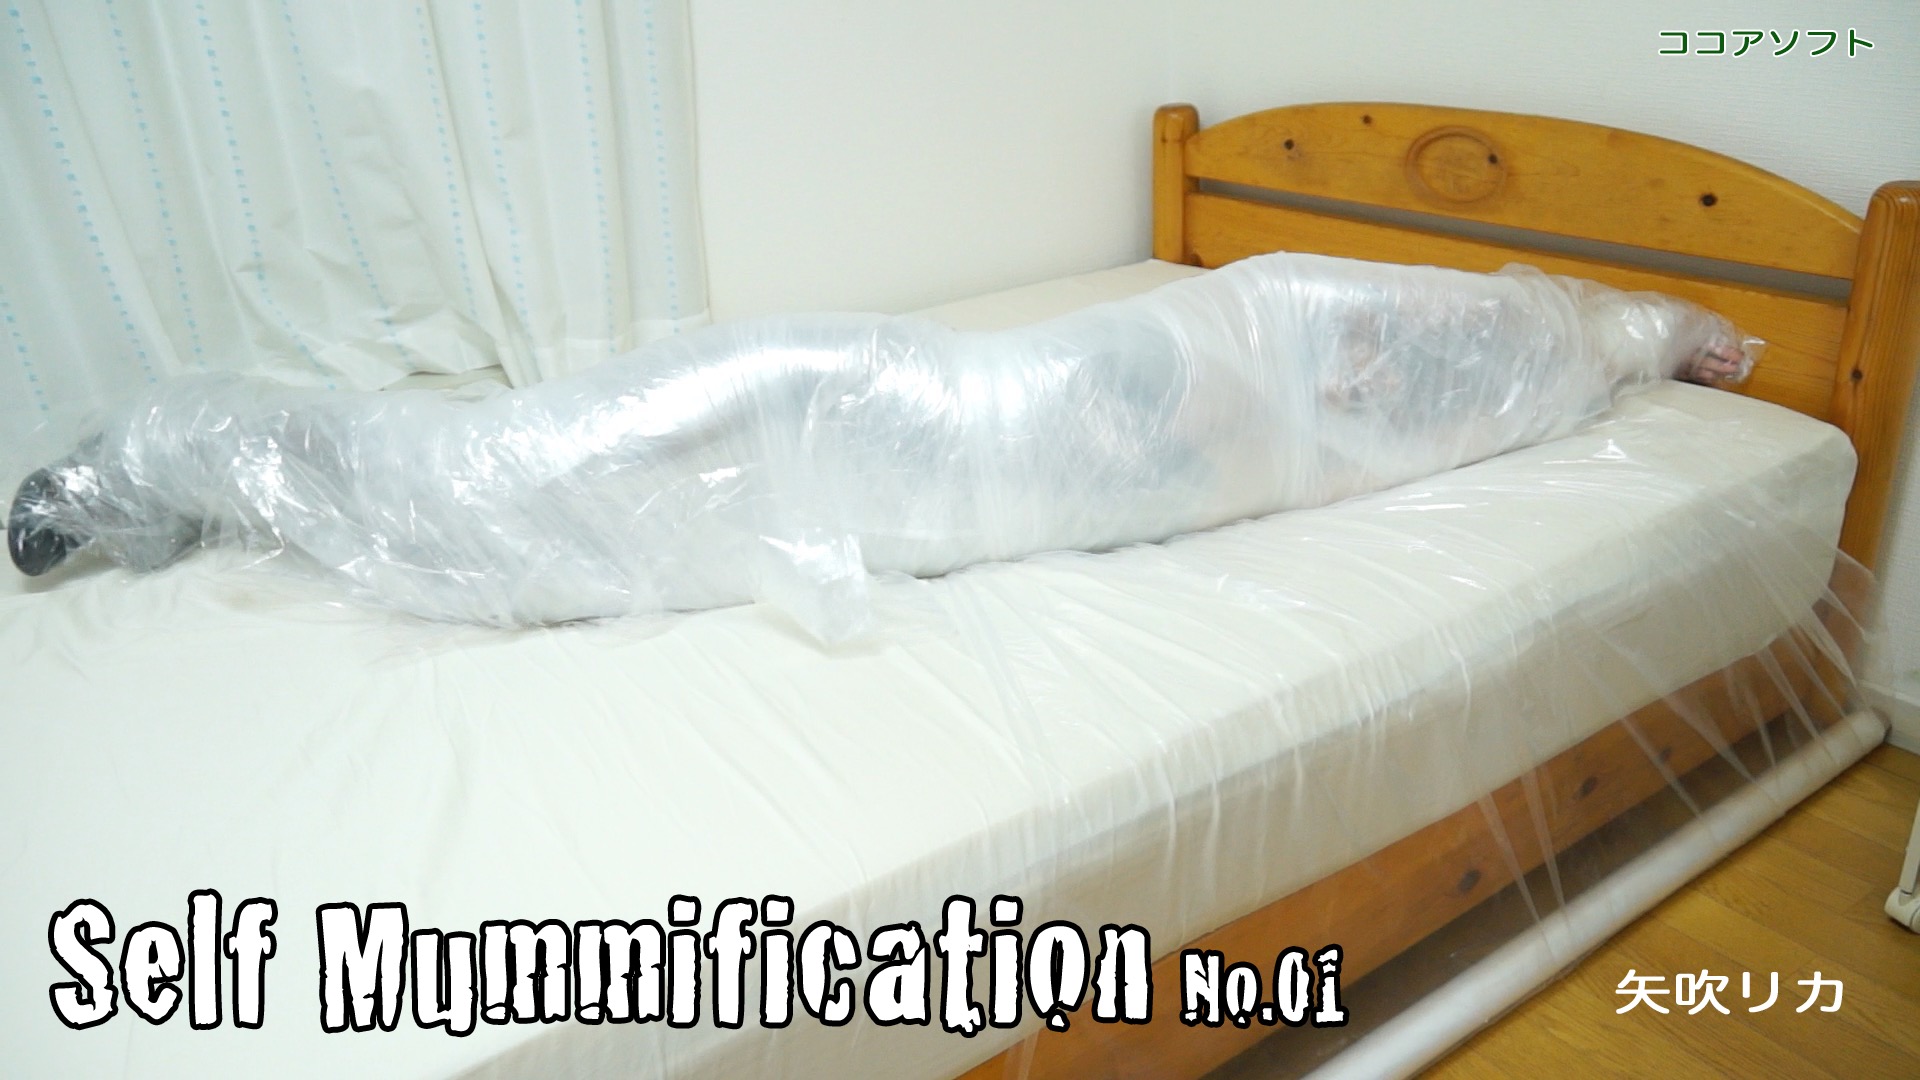 Self Mummification No.01